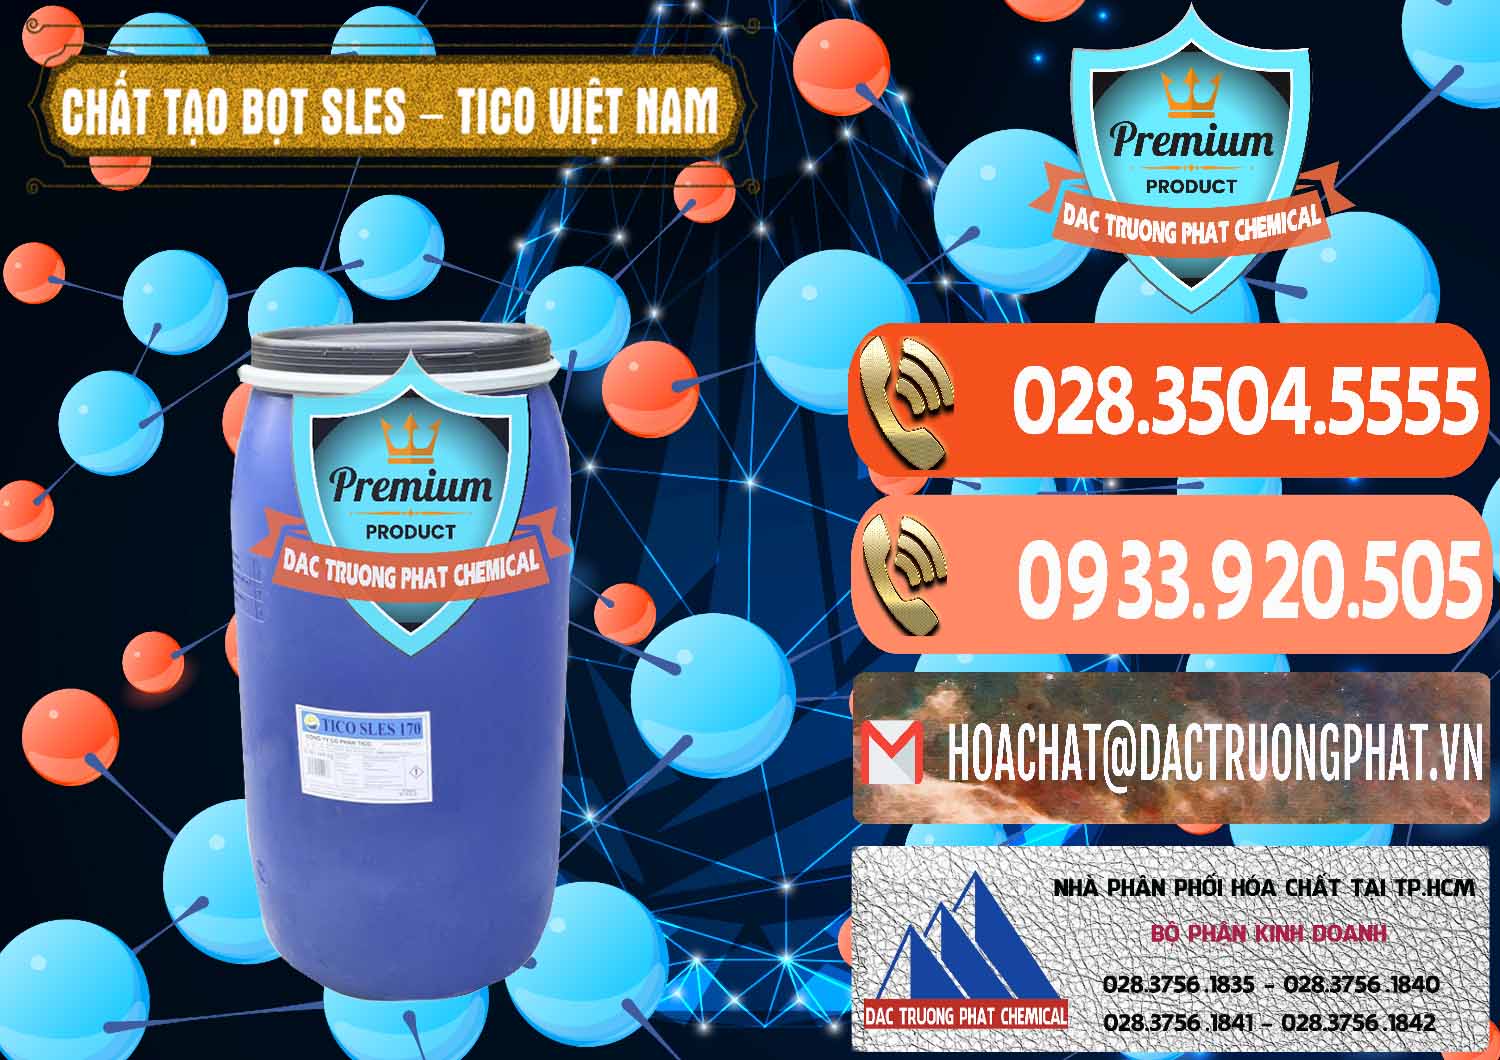 Nơi chuyên bán - cung cấp Chất Tạo Bọt Sles - Sodium Lauryl Ether Sulphate Tico Việt Nam - 0304 - Chuyên cung cấp và phân phối hóa chất tại TP.HCM - hoachatmientay.com